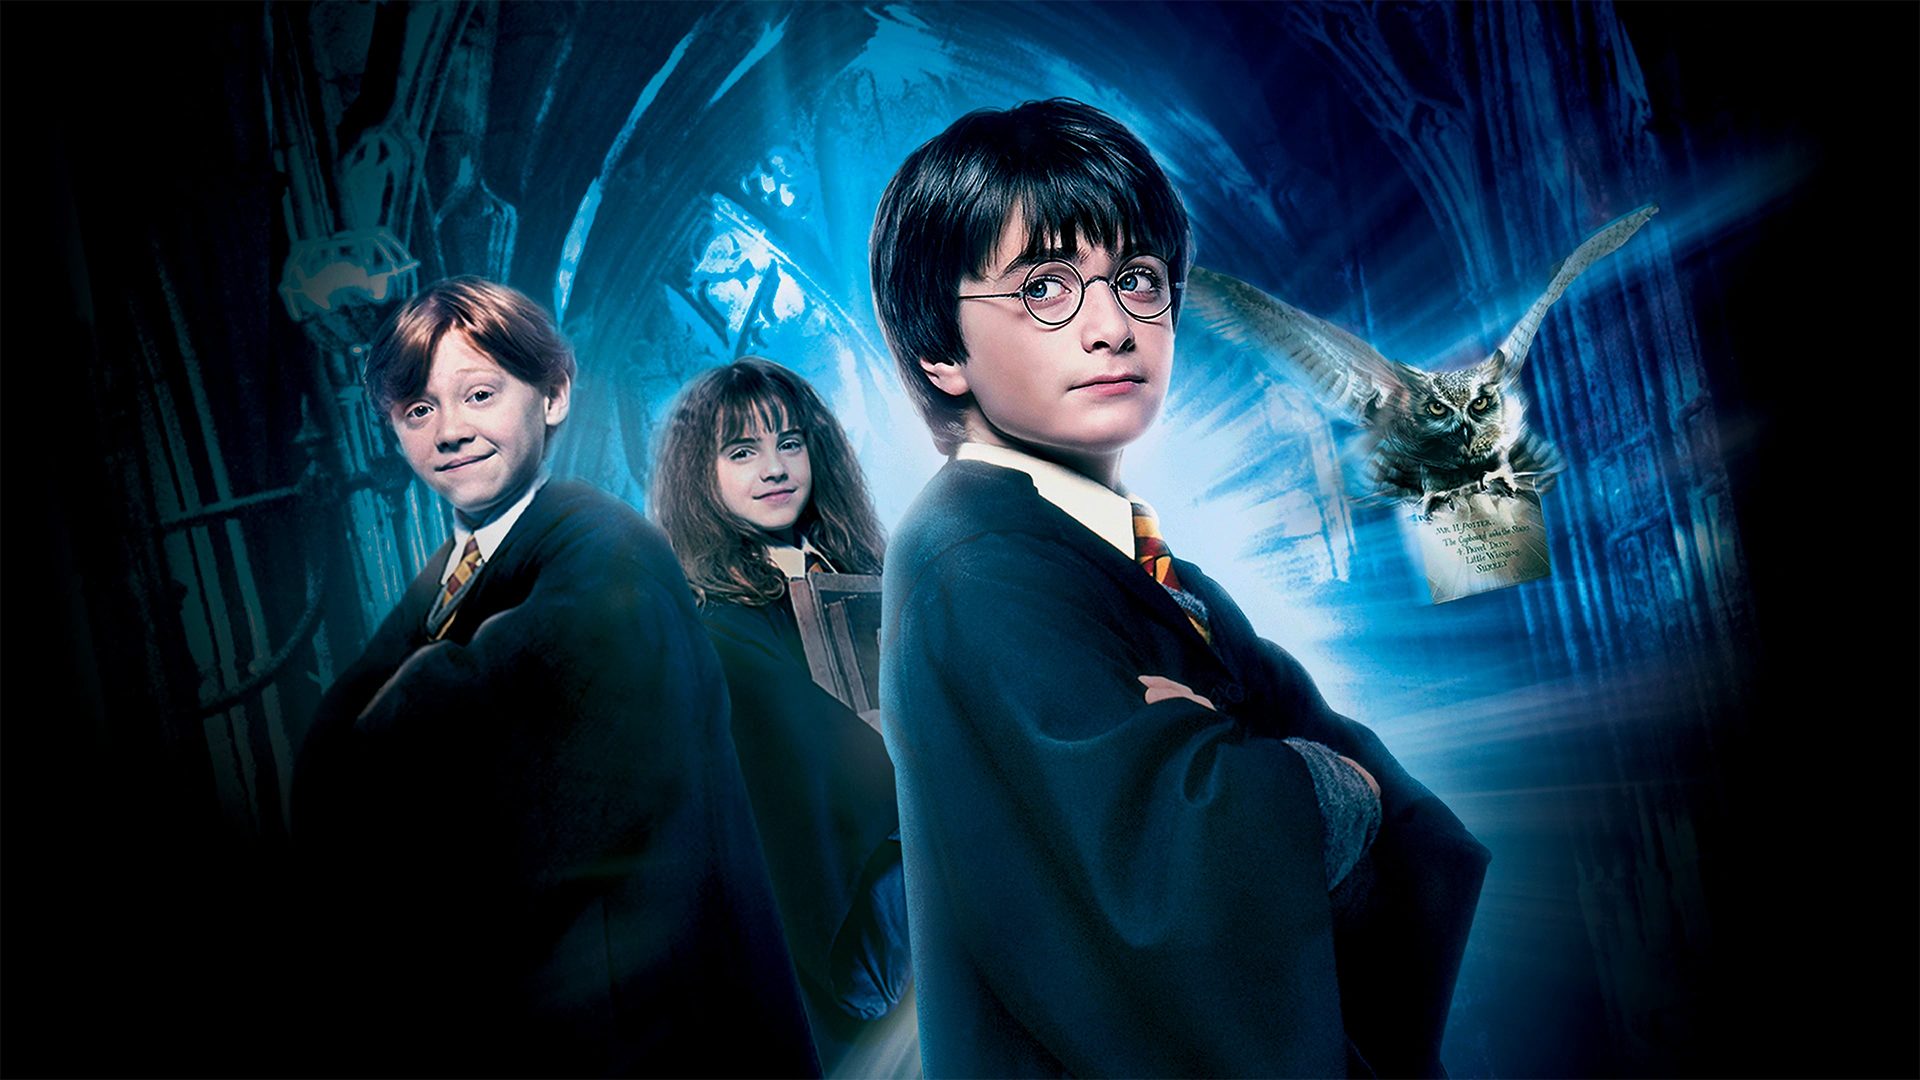 Ticket kopen voor evenement Pubquiz Hofman: Harry Potter (Thema Quiz)